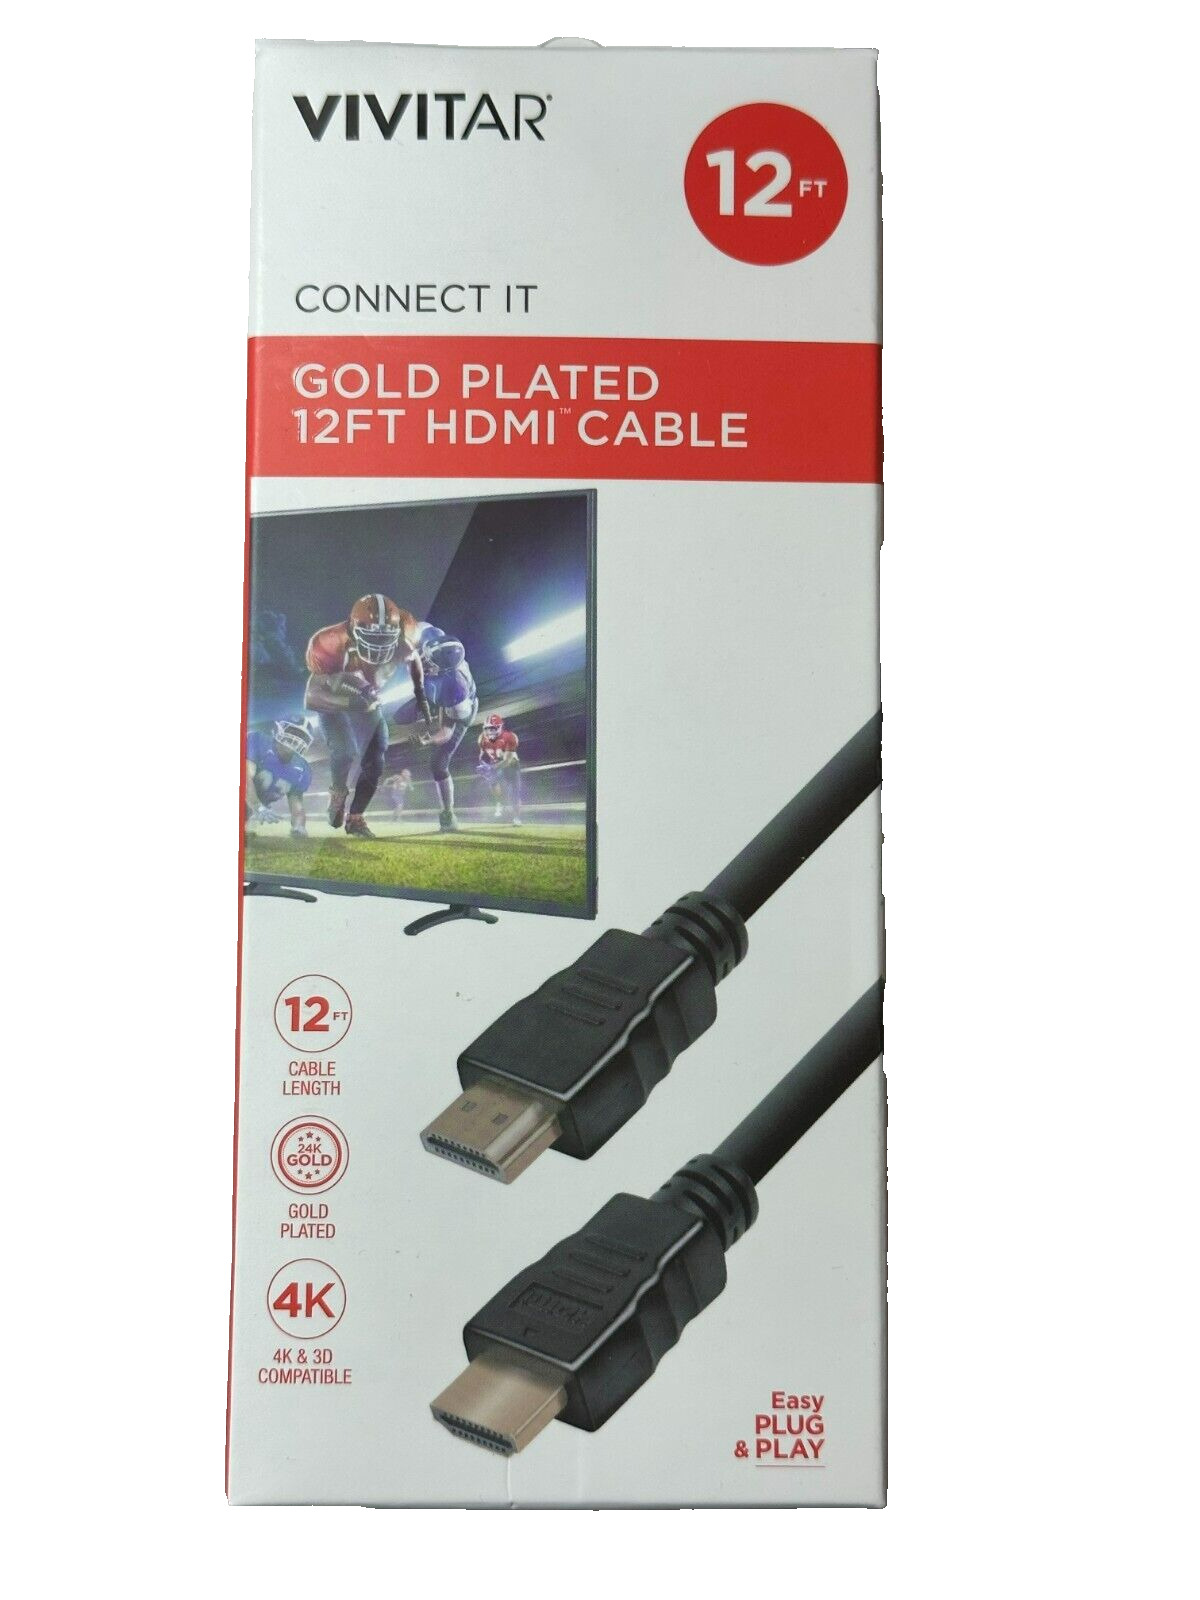 🎵 Vivitar 12' Gold Plated HDMI 4K Hi-Def Premium Cable LOW PRICE